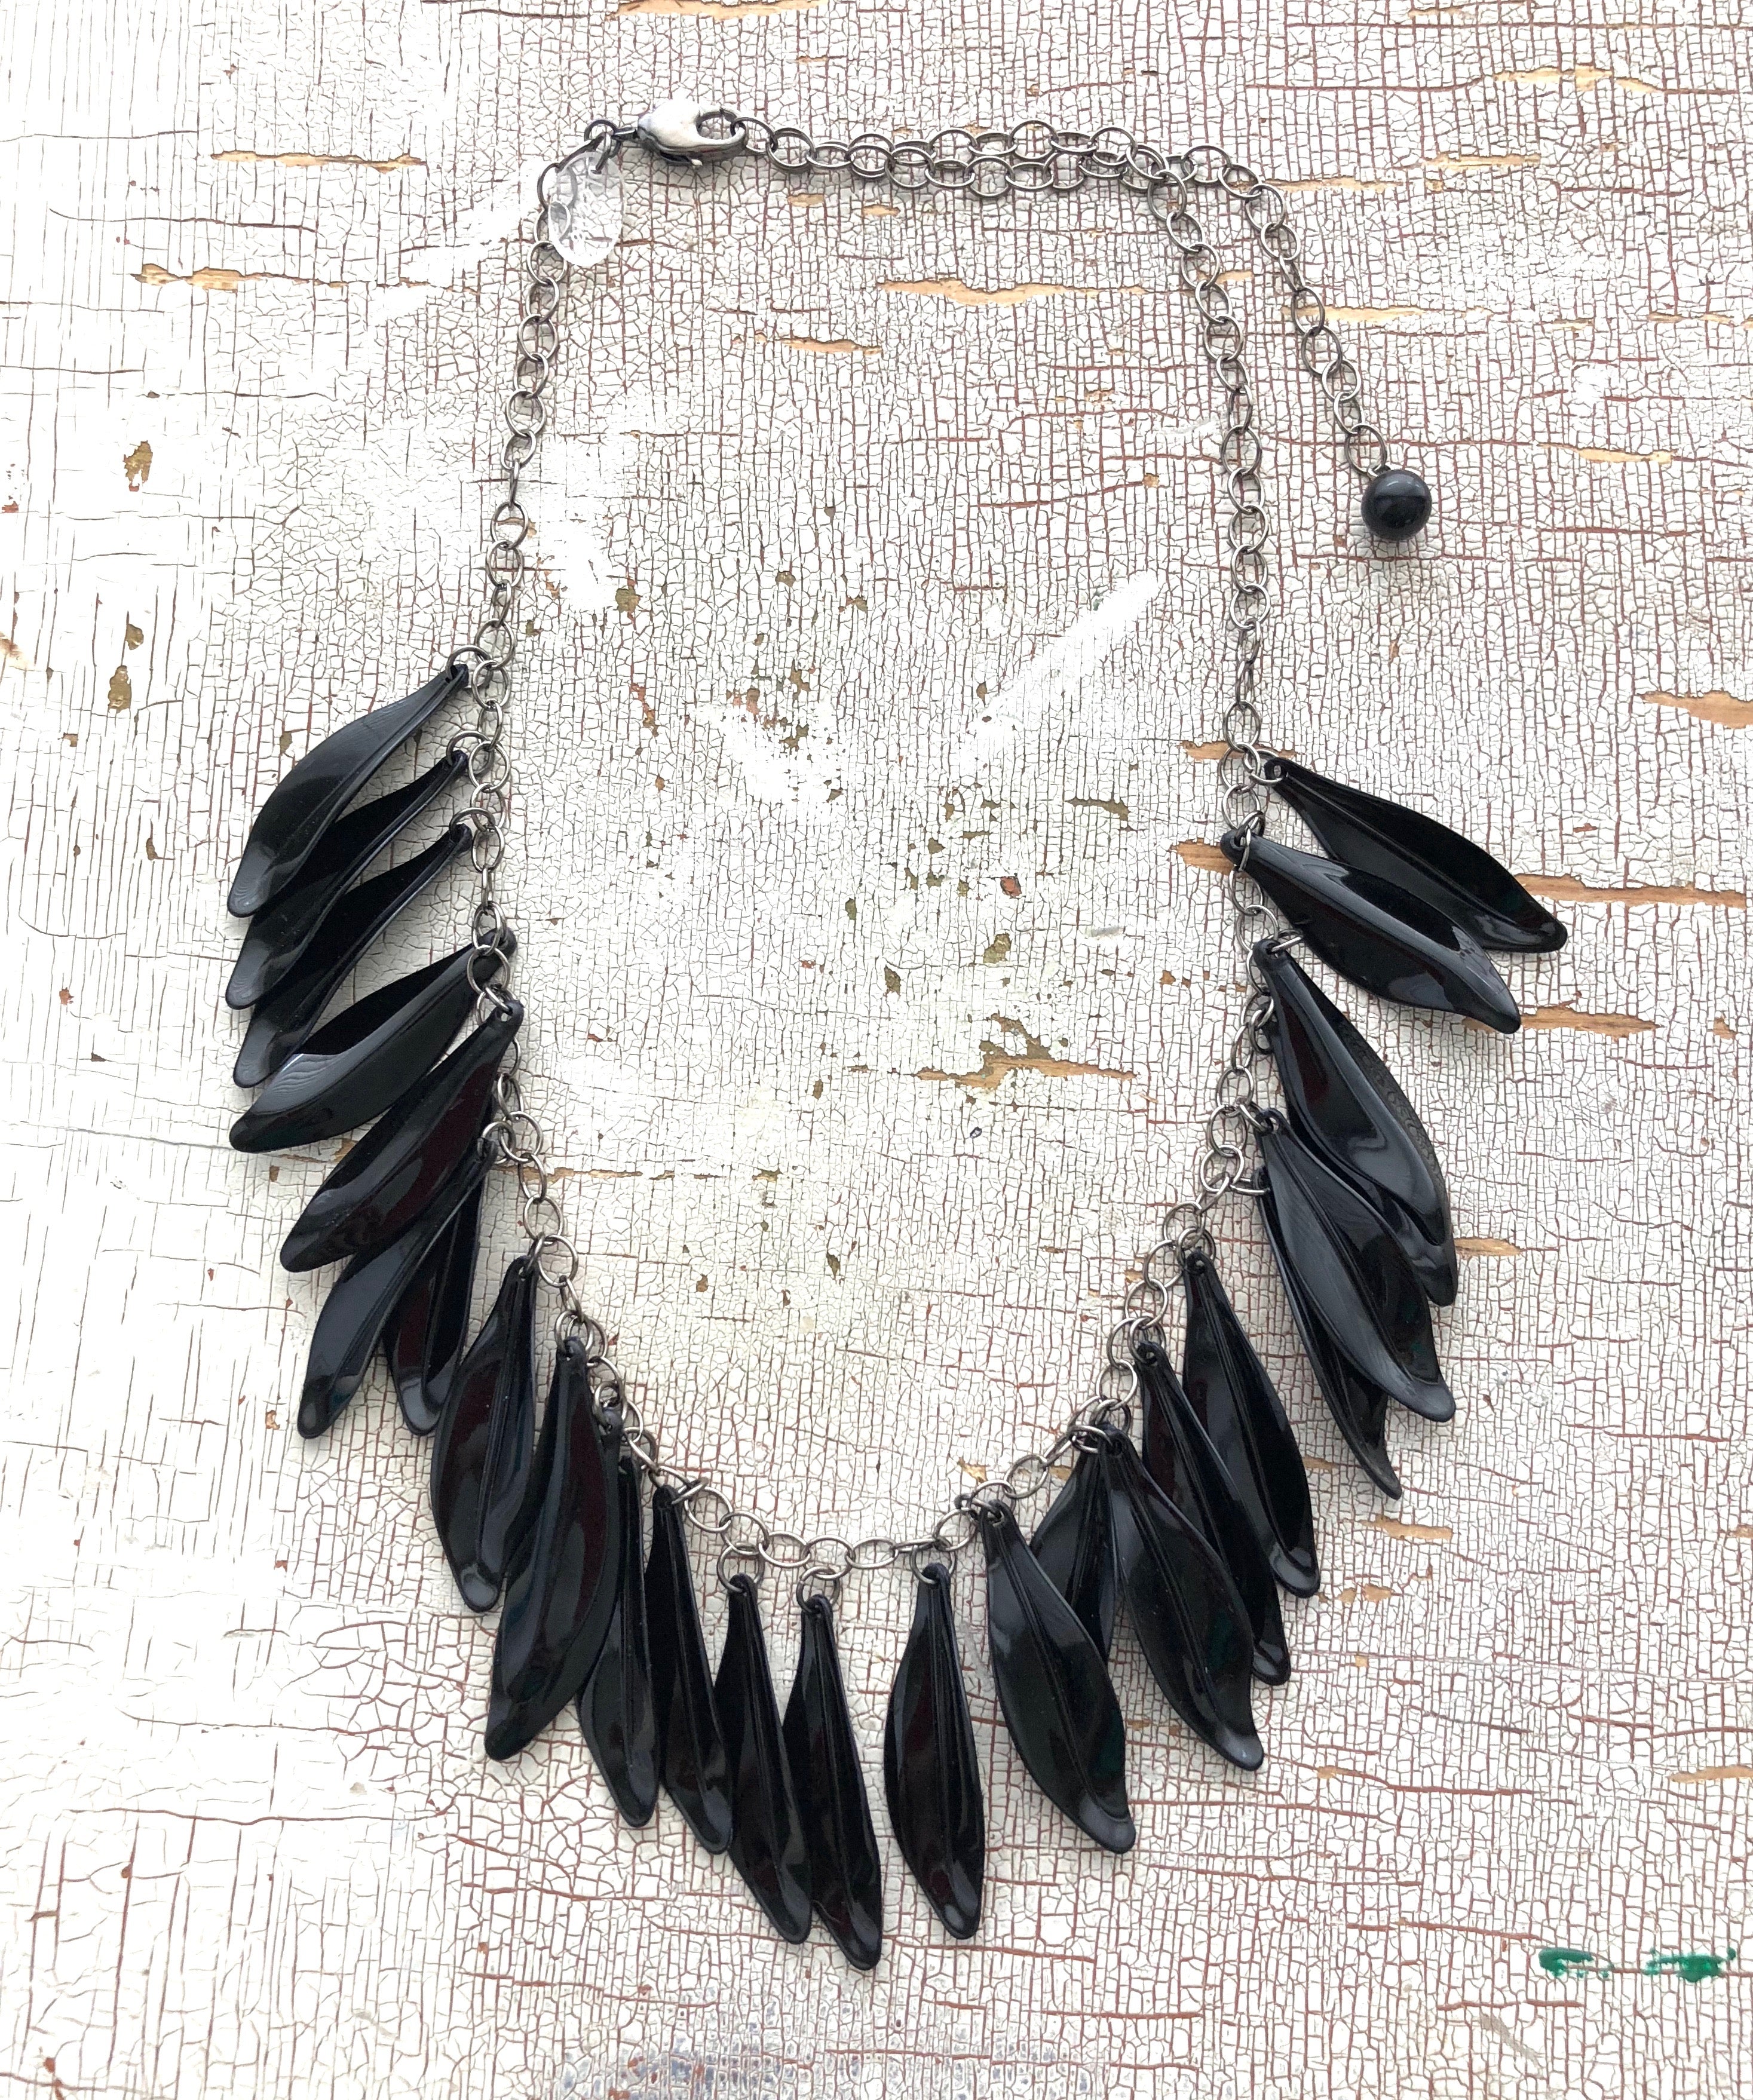 black leaf necklace